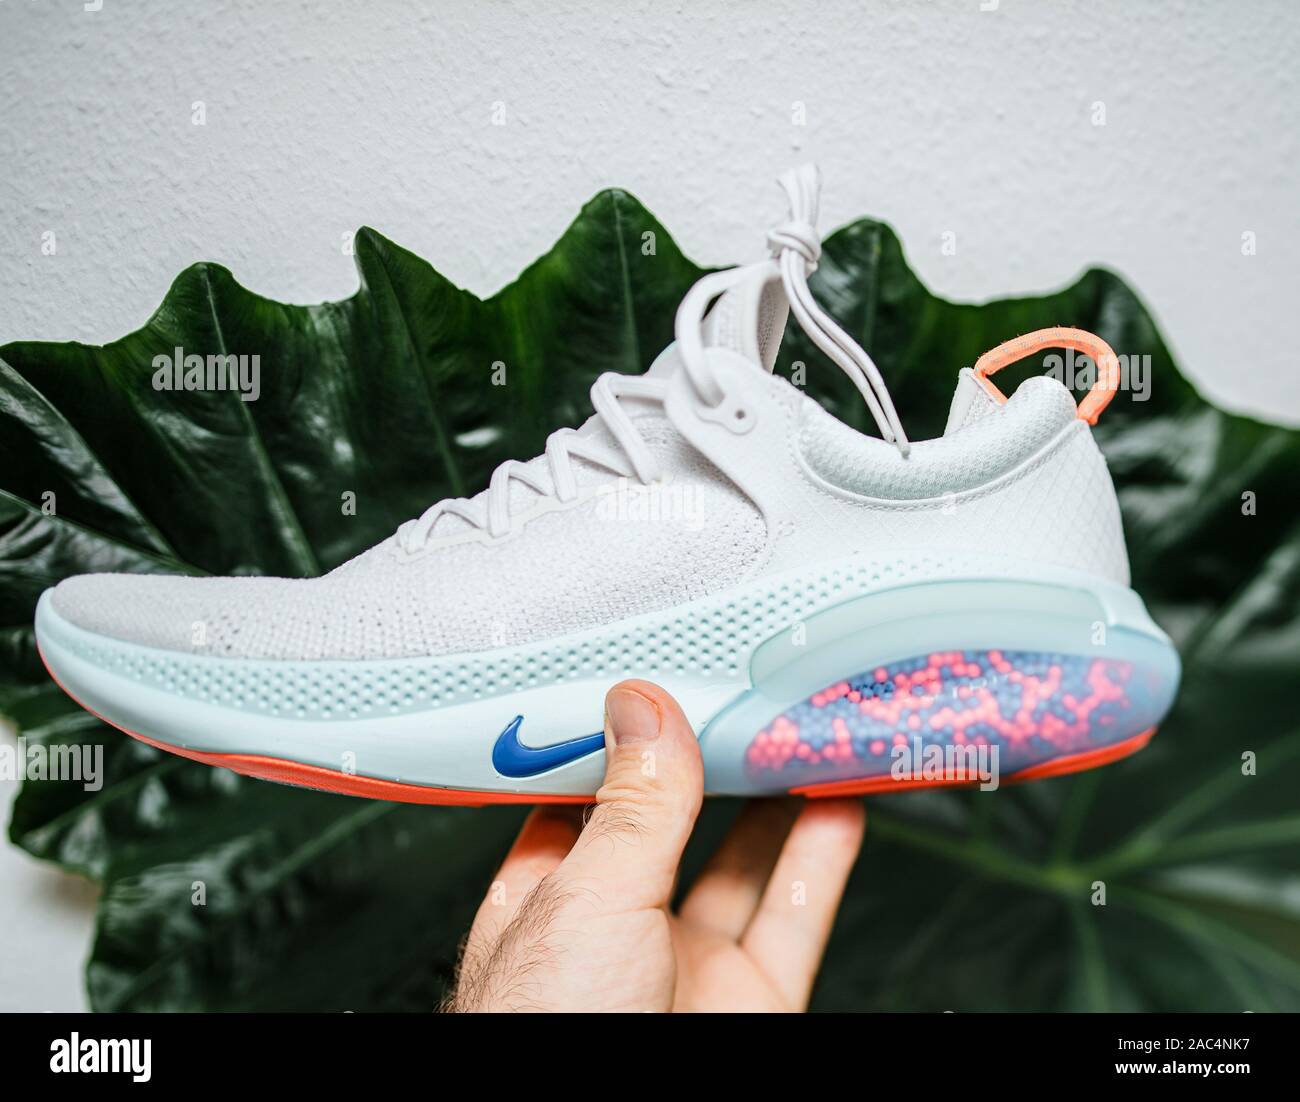 Francia - 30 Jul, 2019: POV mano sujetando últimas Nike Flyknit duración Run zapatillas profesionales Fotografía de stock - Alamy